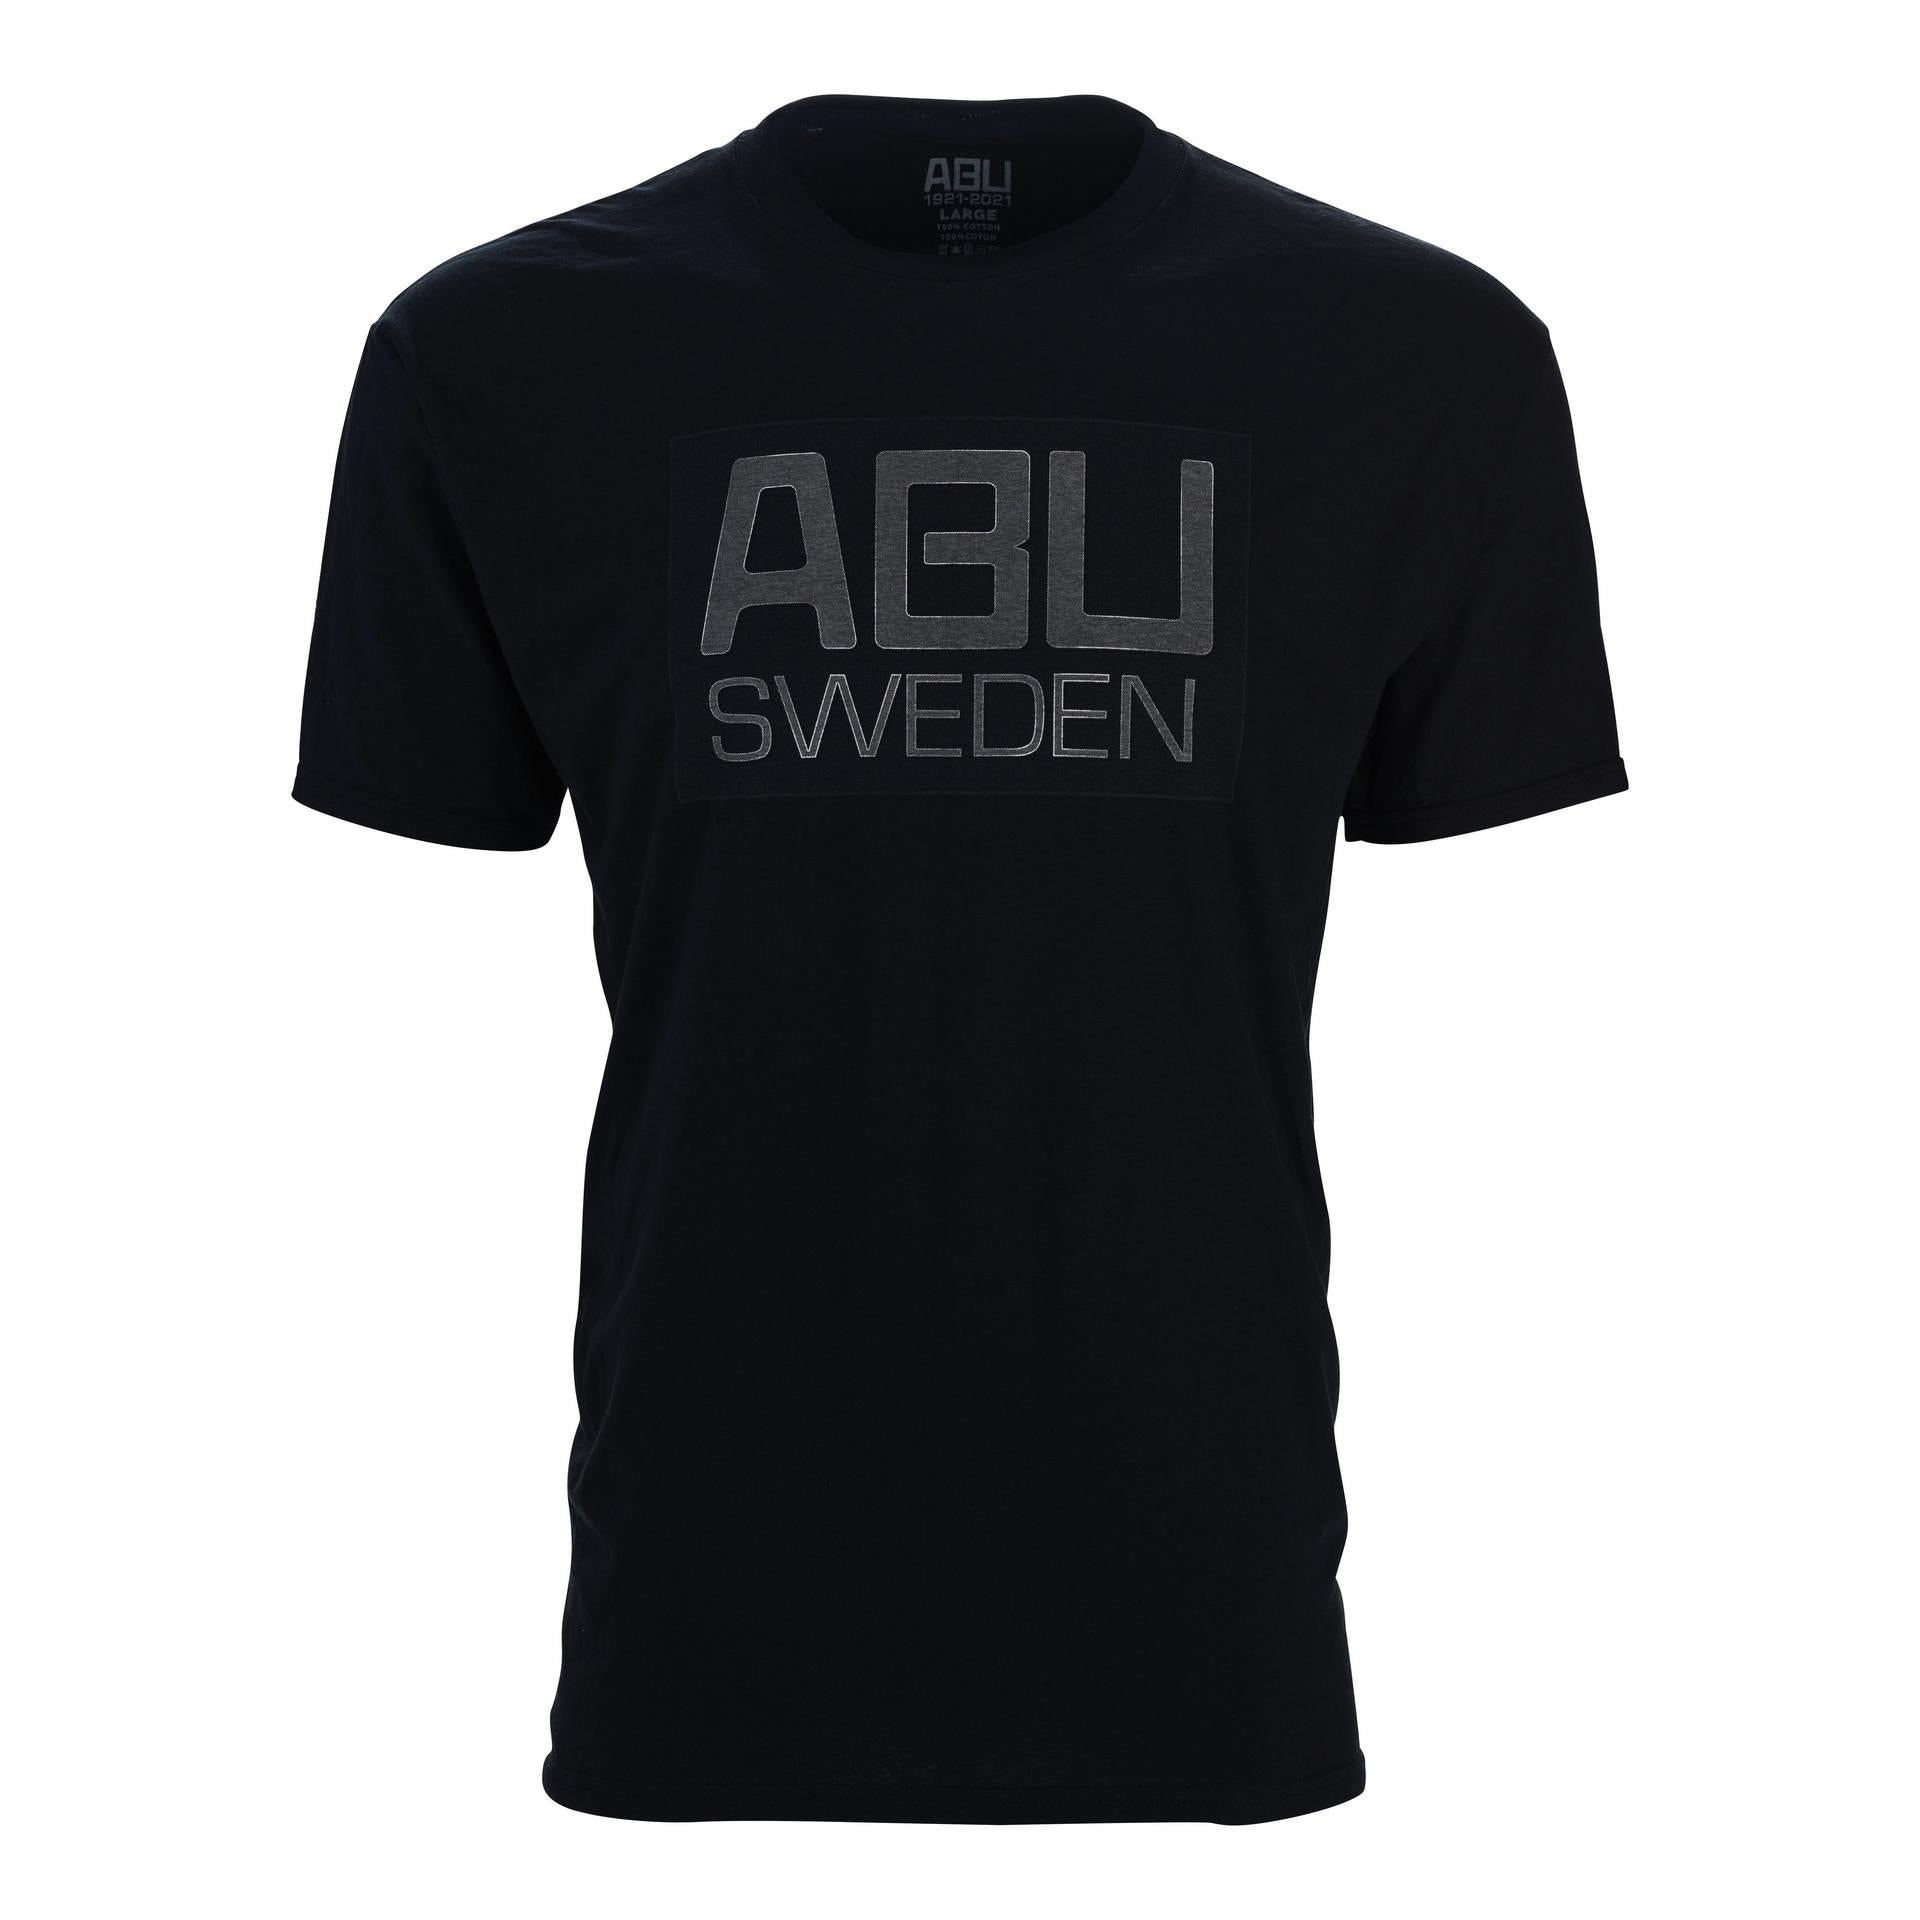 ABU 100 YEARS T-Shirt - ABU SWEDEN | Abu Garcia®